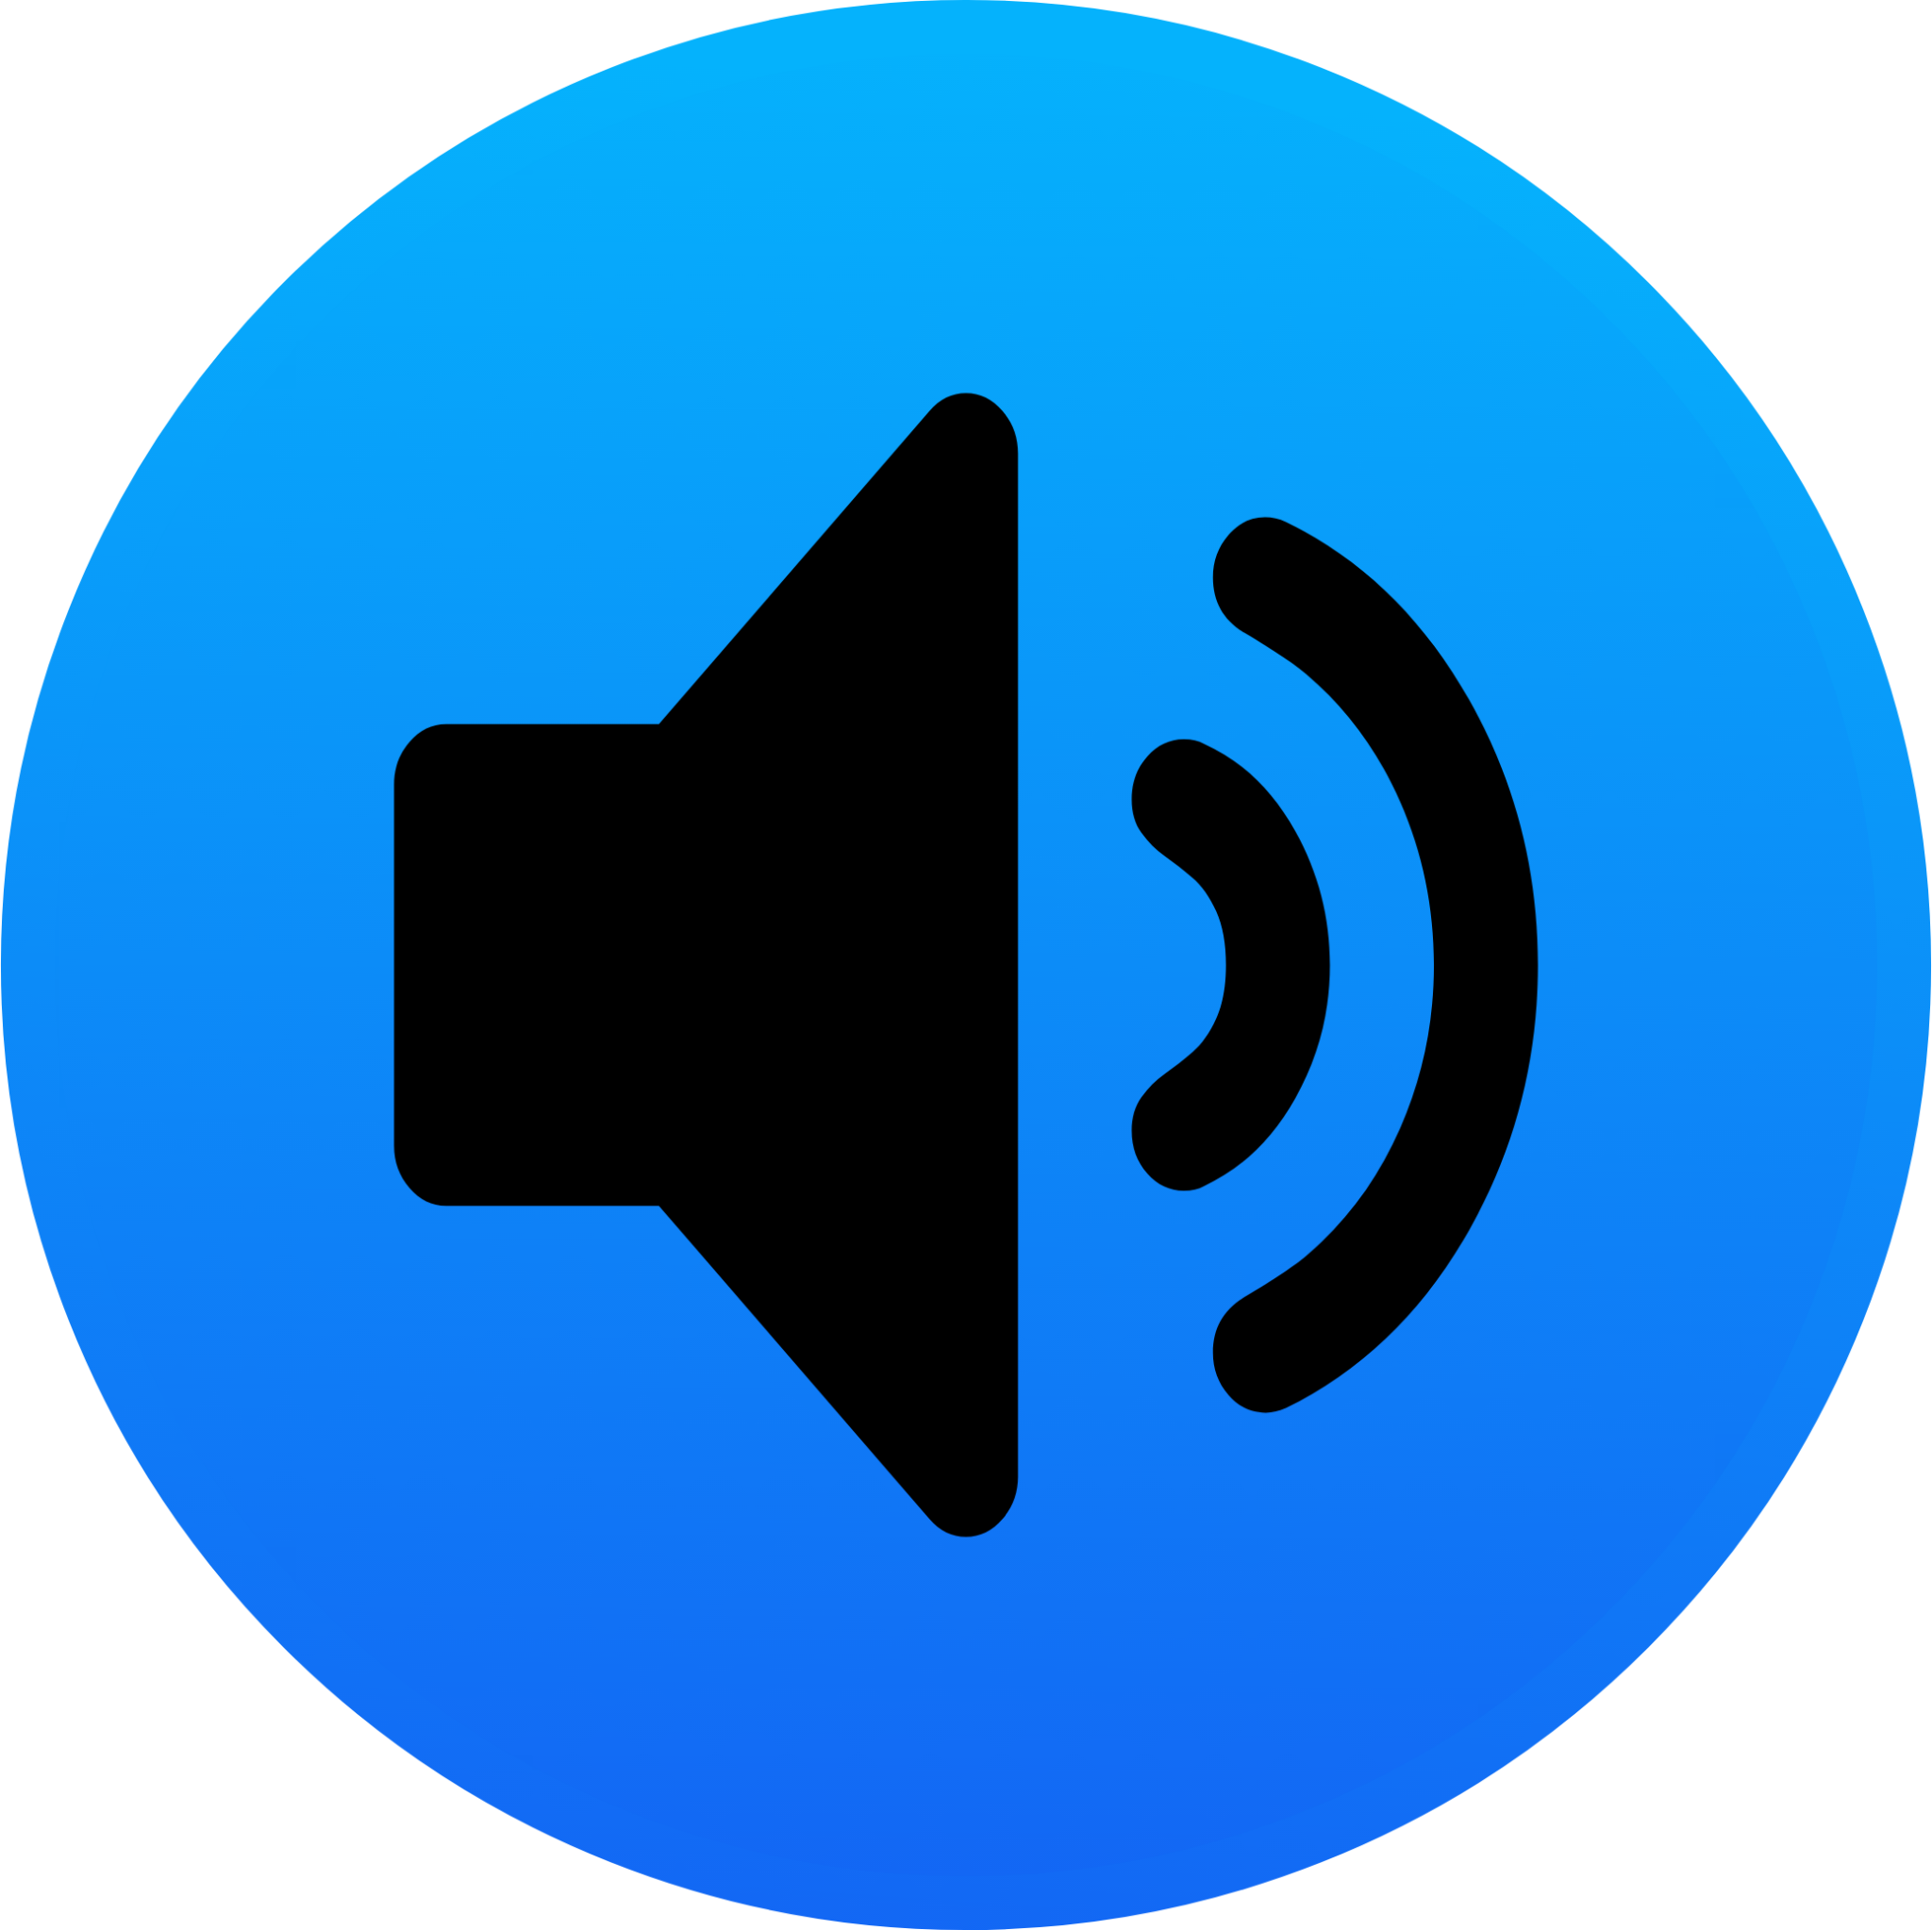 audio speakers 2 icon